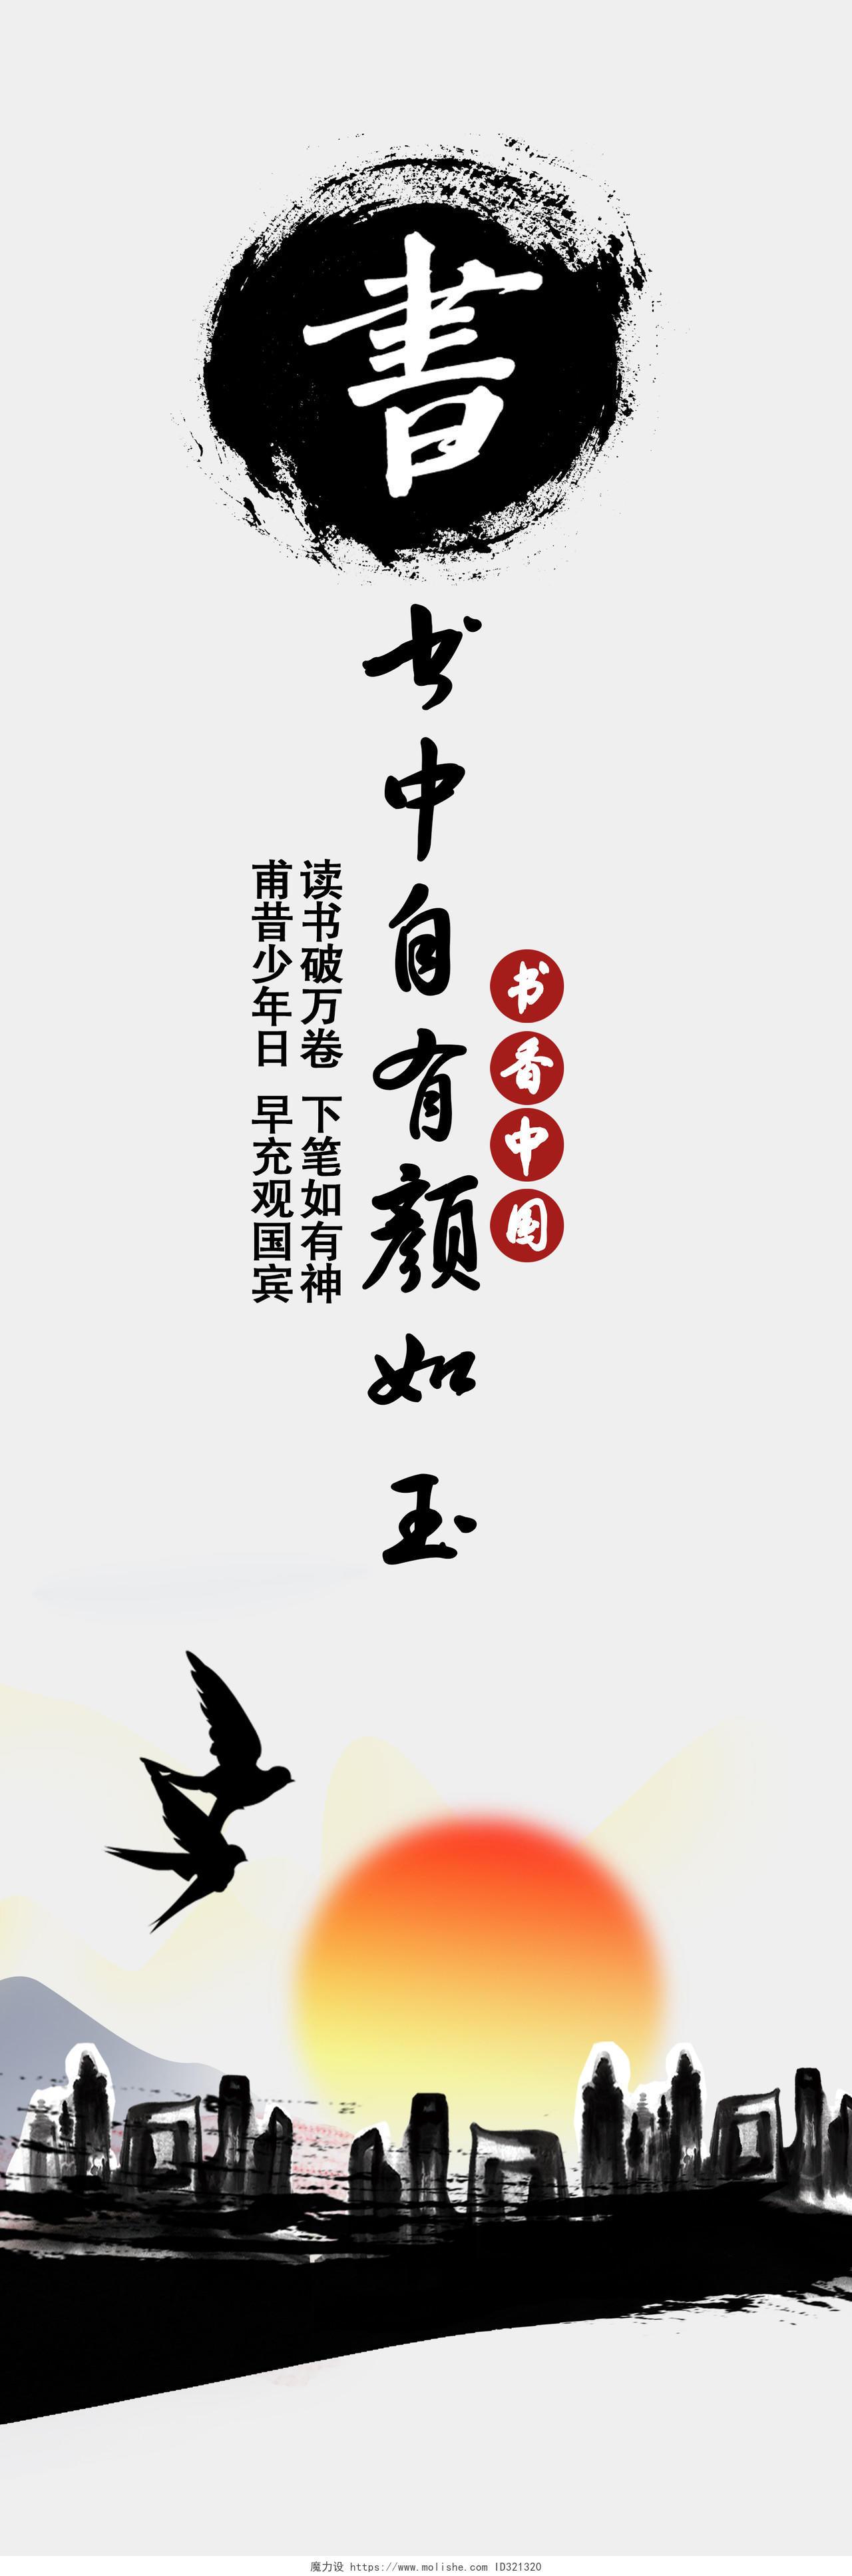 读书分享中国风书香中国梦读书阅读文化4联画挂画海报展板